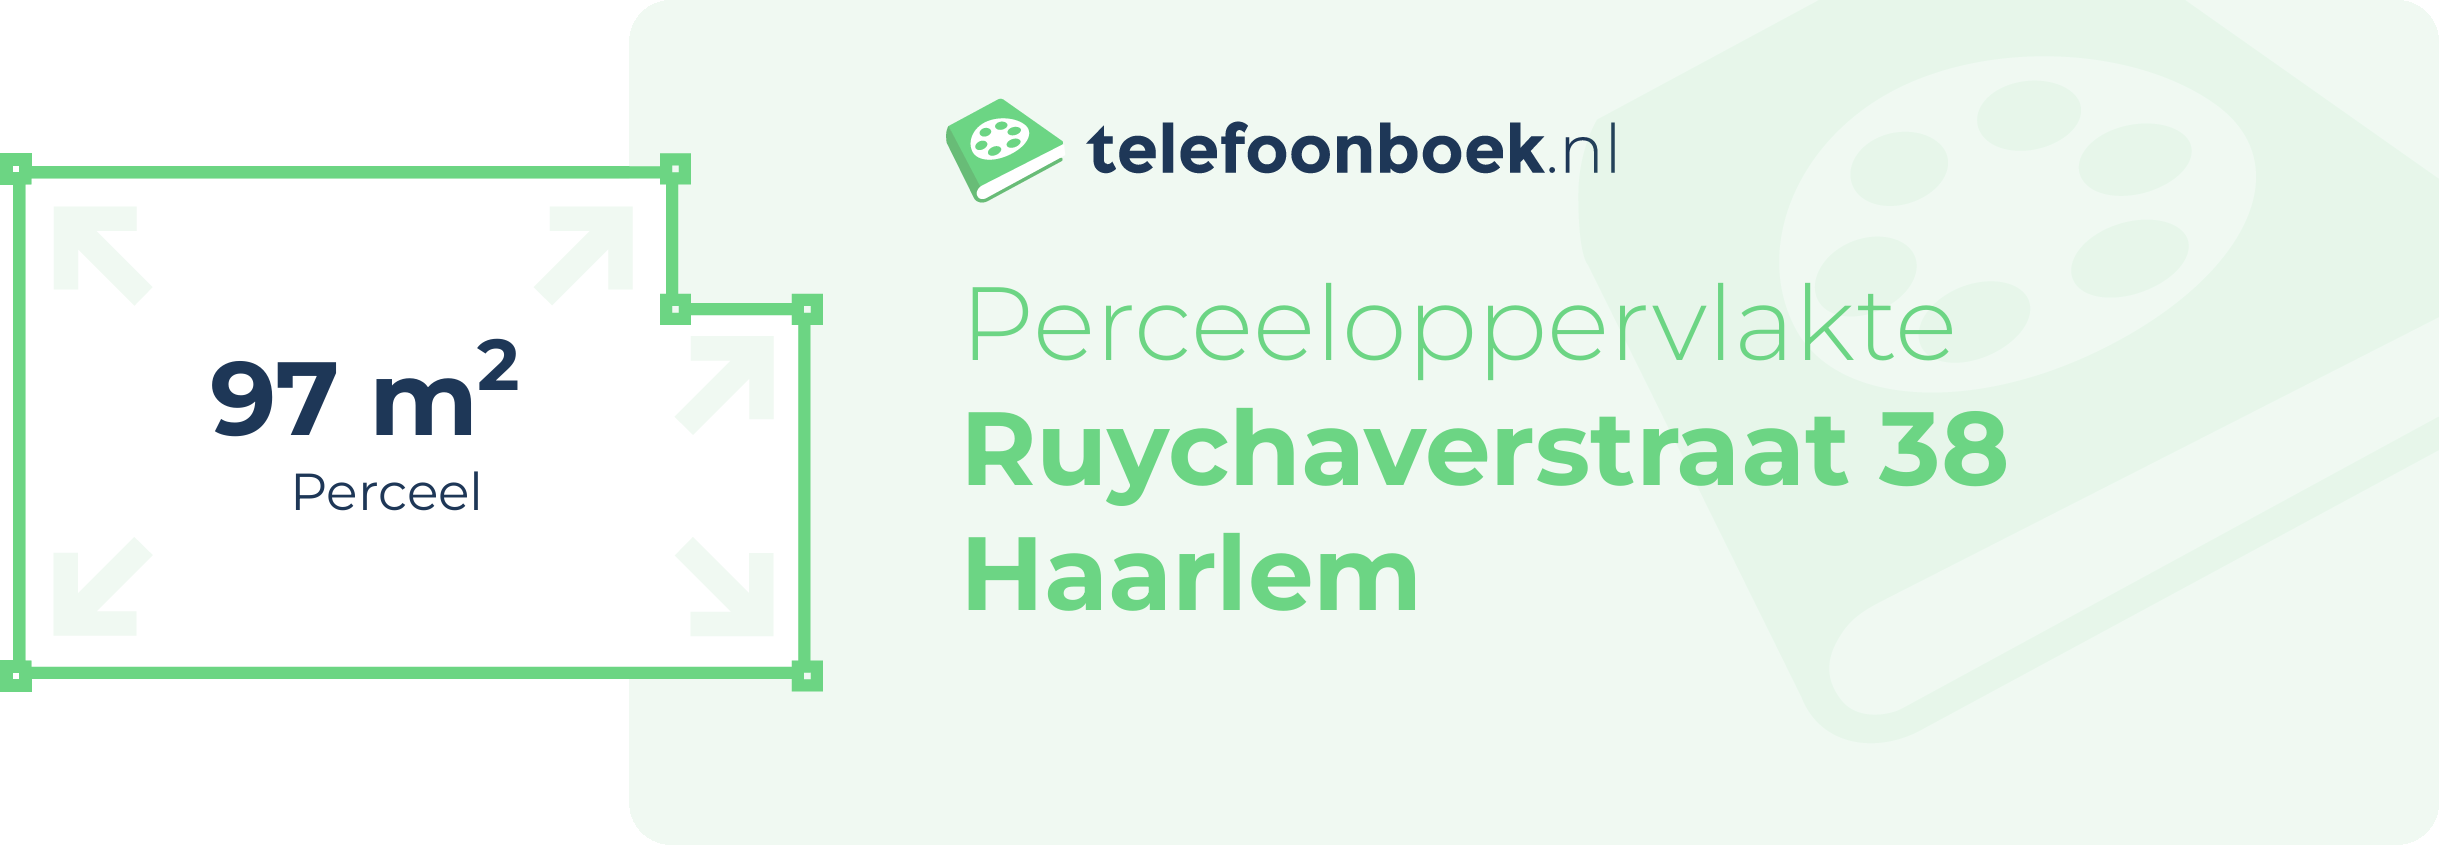 Perceeloppervlakte Ruychaverstraat 38 Haarlem